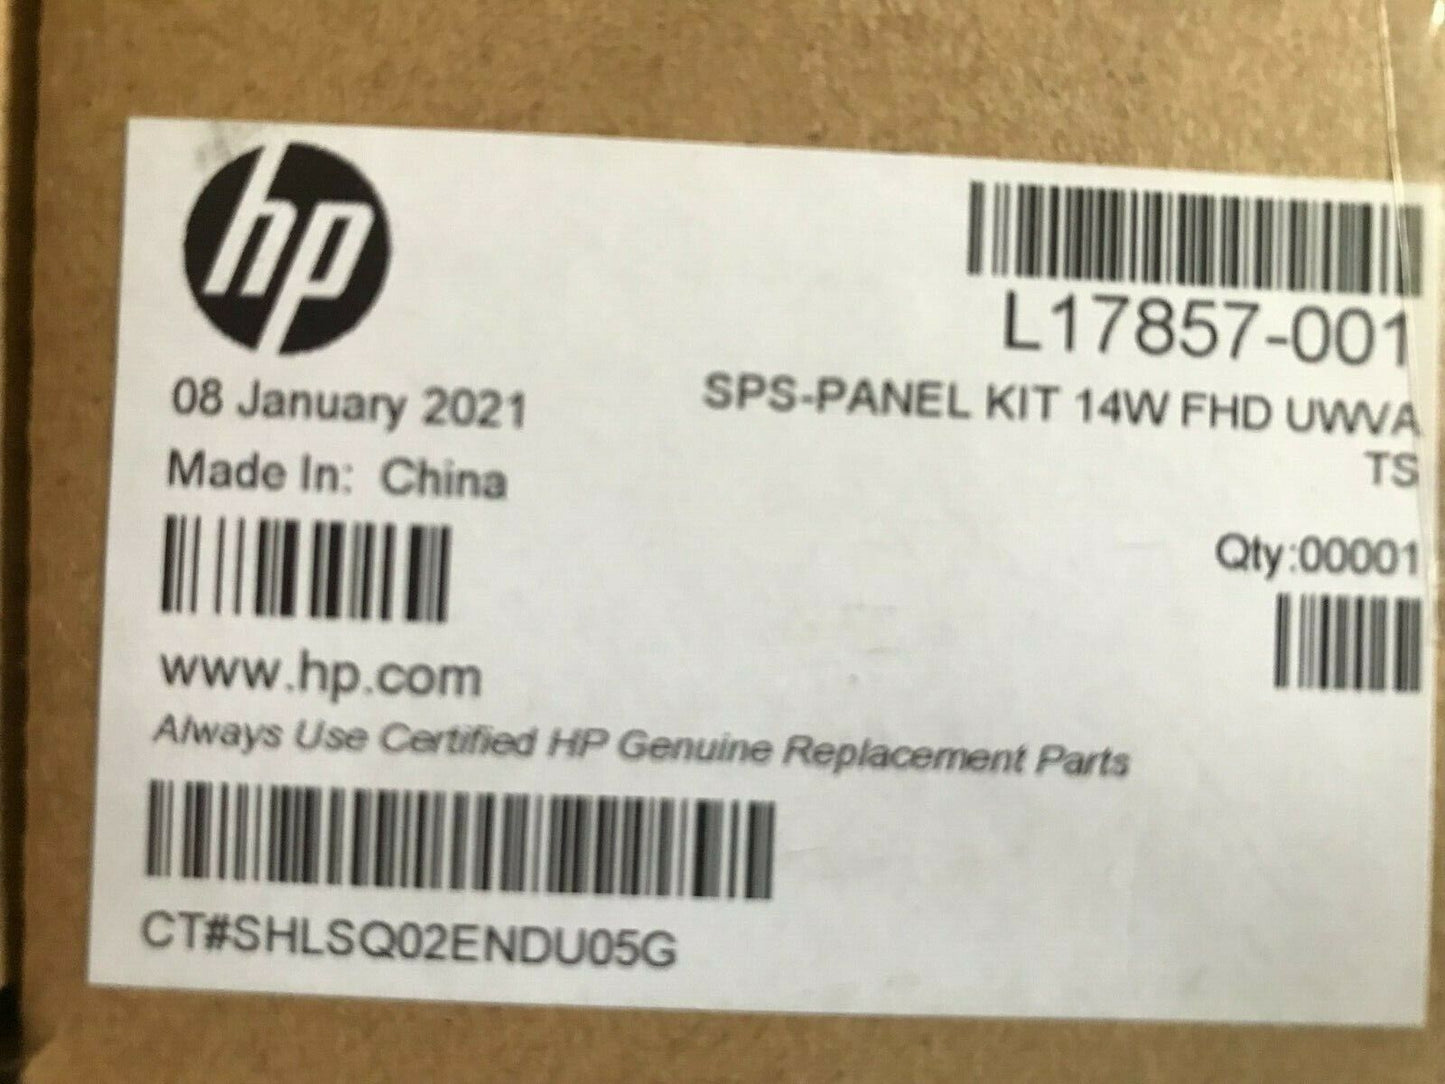 NEW HP L17857-001 DISPLAY PANEL KIT 14W FHD UWVA TS ZBOOK 14u G5